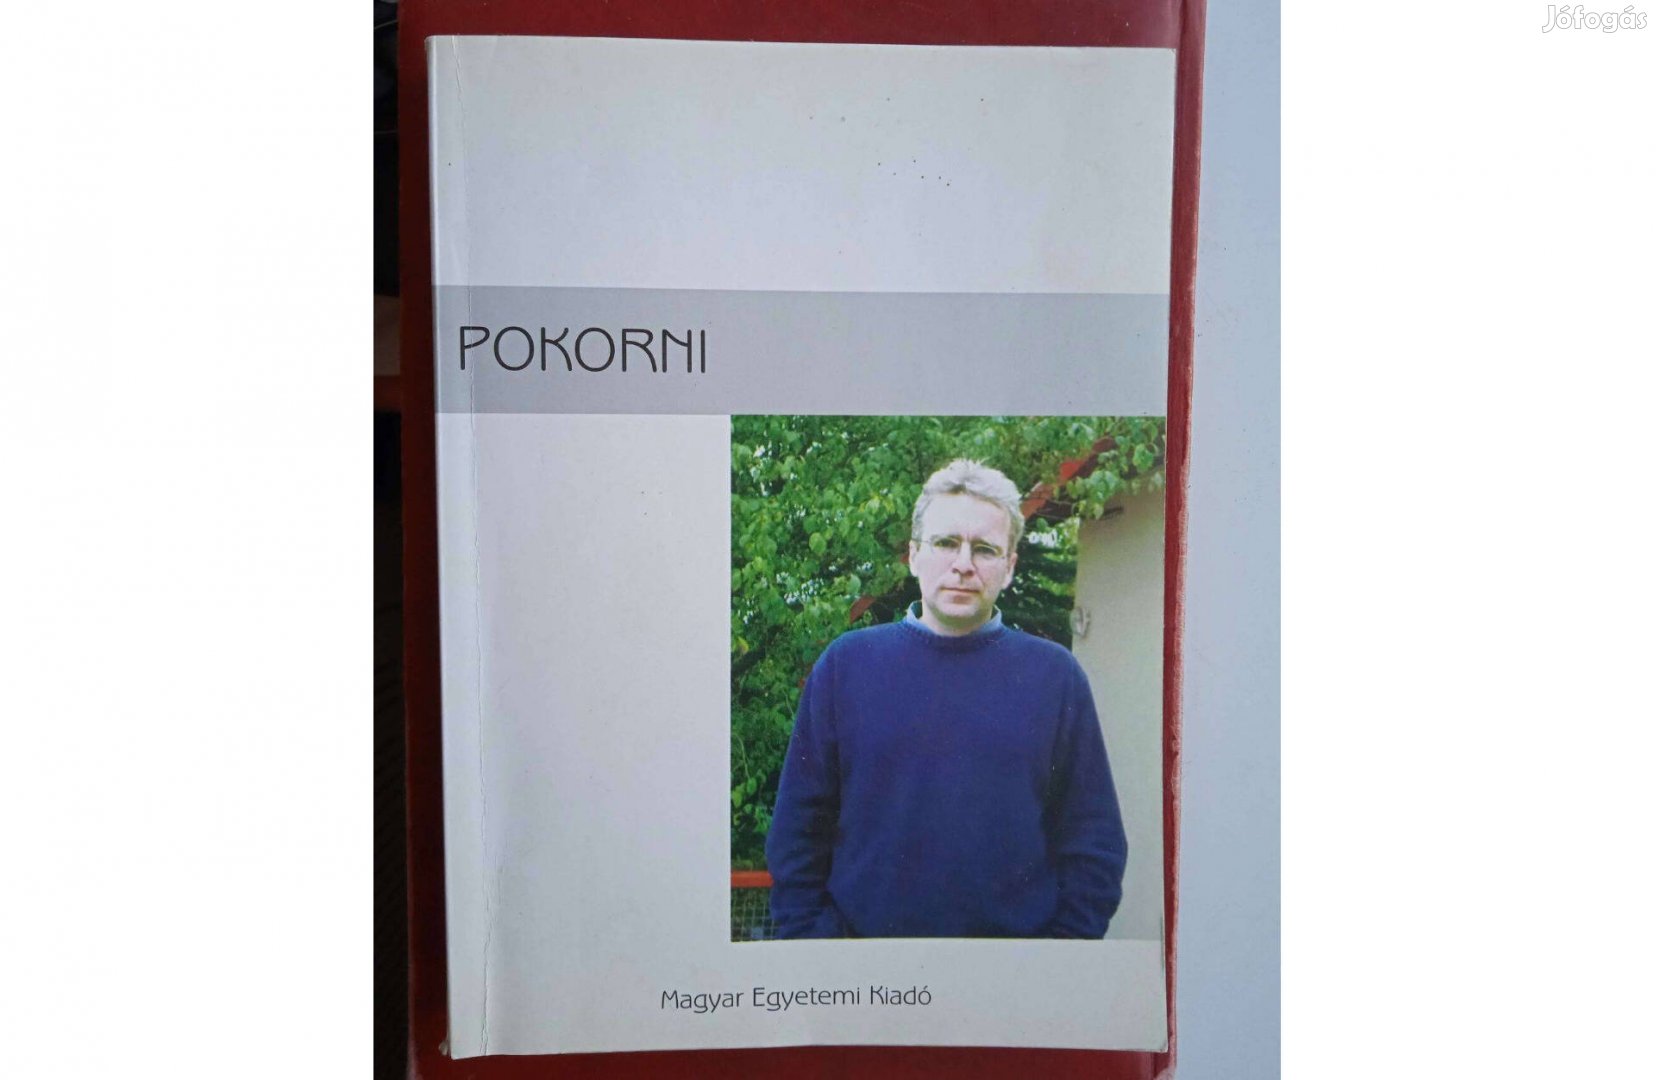 Pokorni - Magyar Egyetemi Kiadó 2004 , dedikált példány